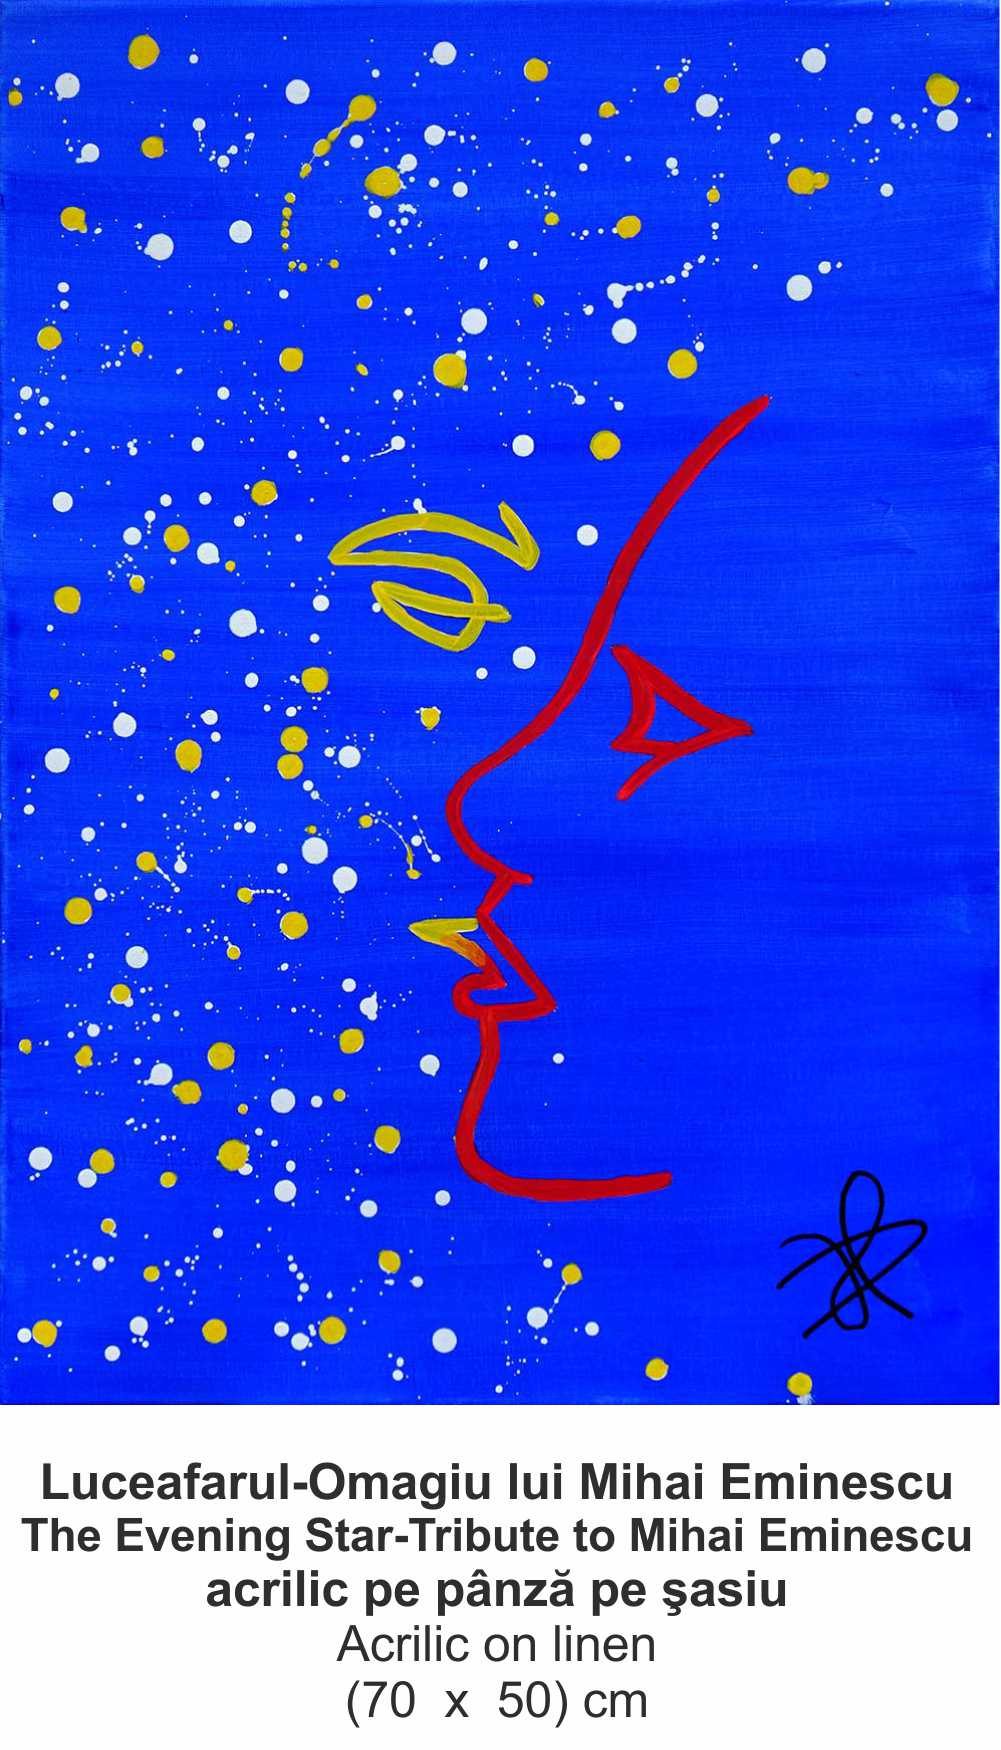 „Luceafarul-Omagiu lui Mihai Eminescu” („The Evening Star-Tribute to Mihai Eminescu”) - acrilic pe pânză pe şasiu (Acrilic on linen) - (70  x  50) cm - img 14